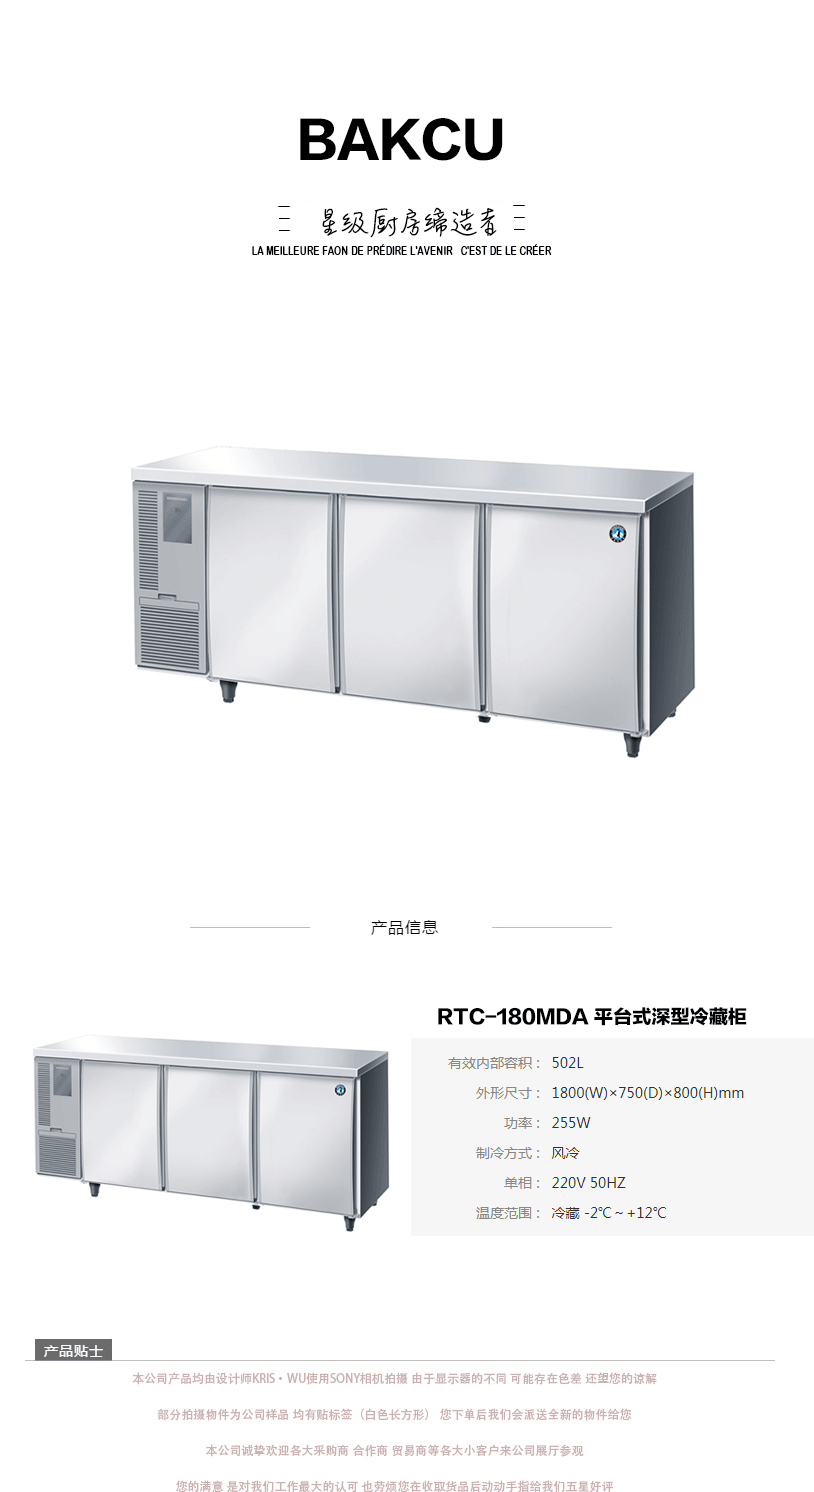 日本HOSHIZAKI星崎不锈钢原装进口RTC-180MDA 平台式深型冷藏柜示例图1